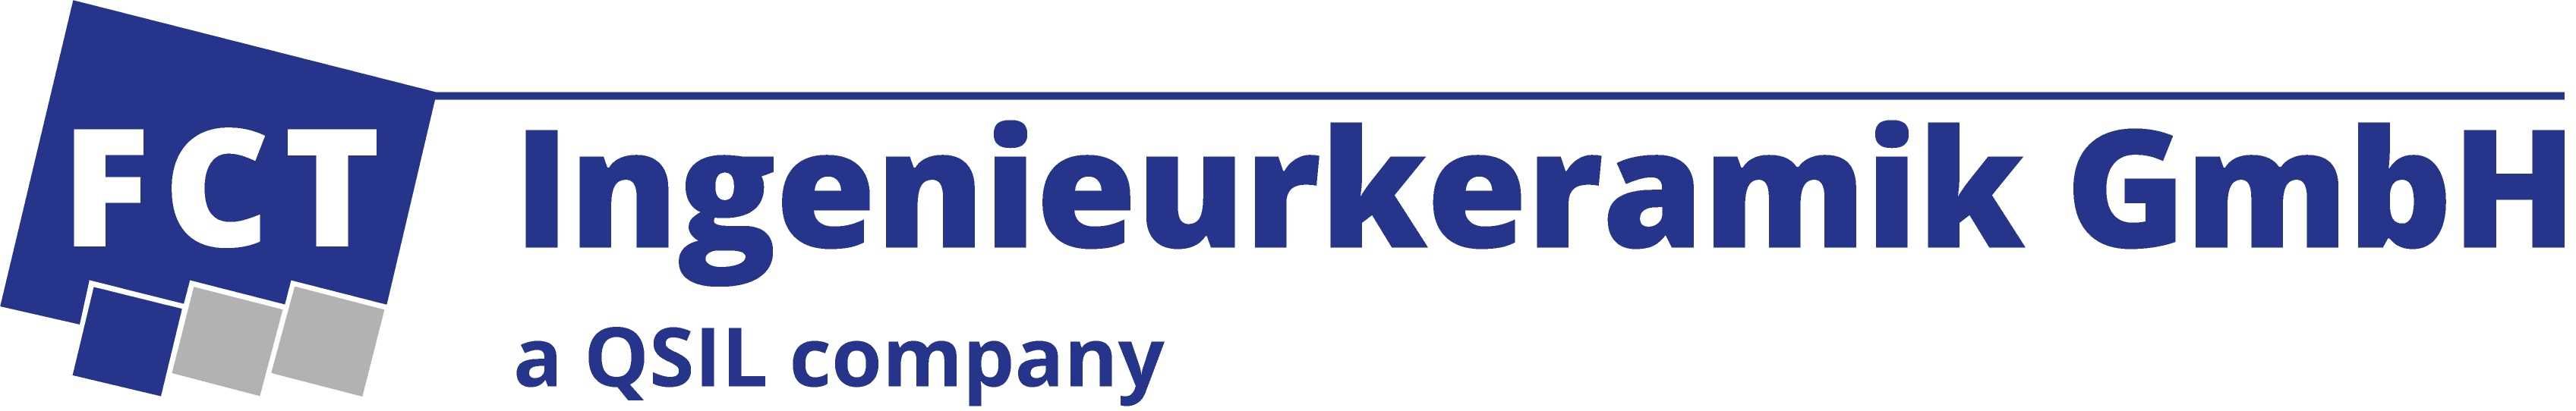 FCT INGENIEURKERAMIK GmbH